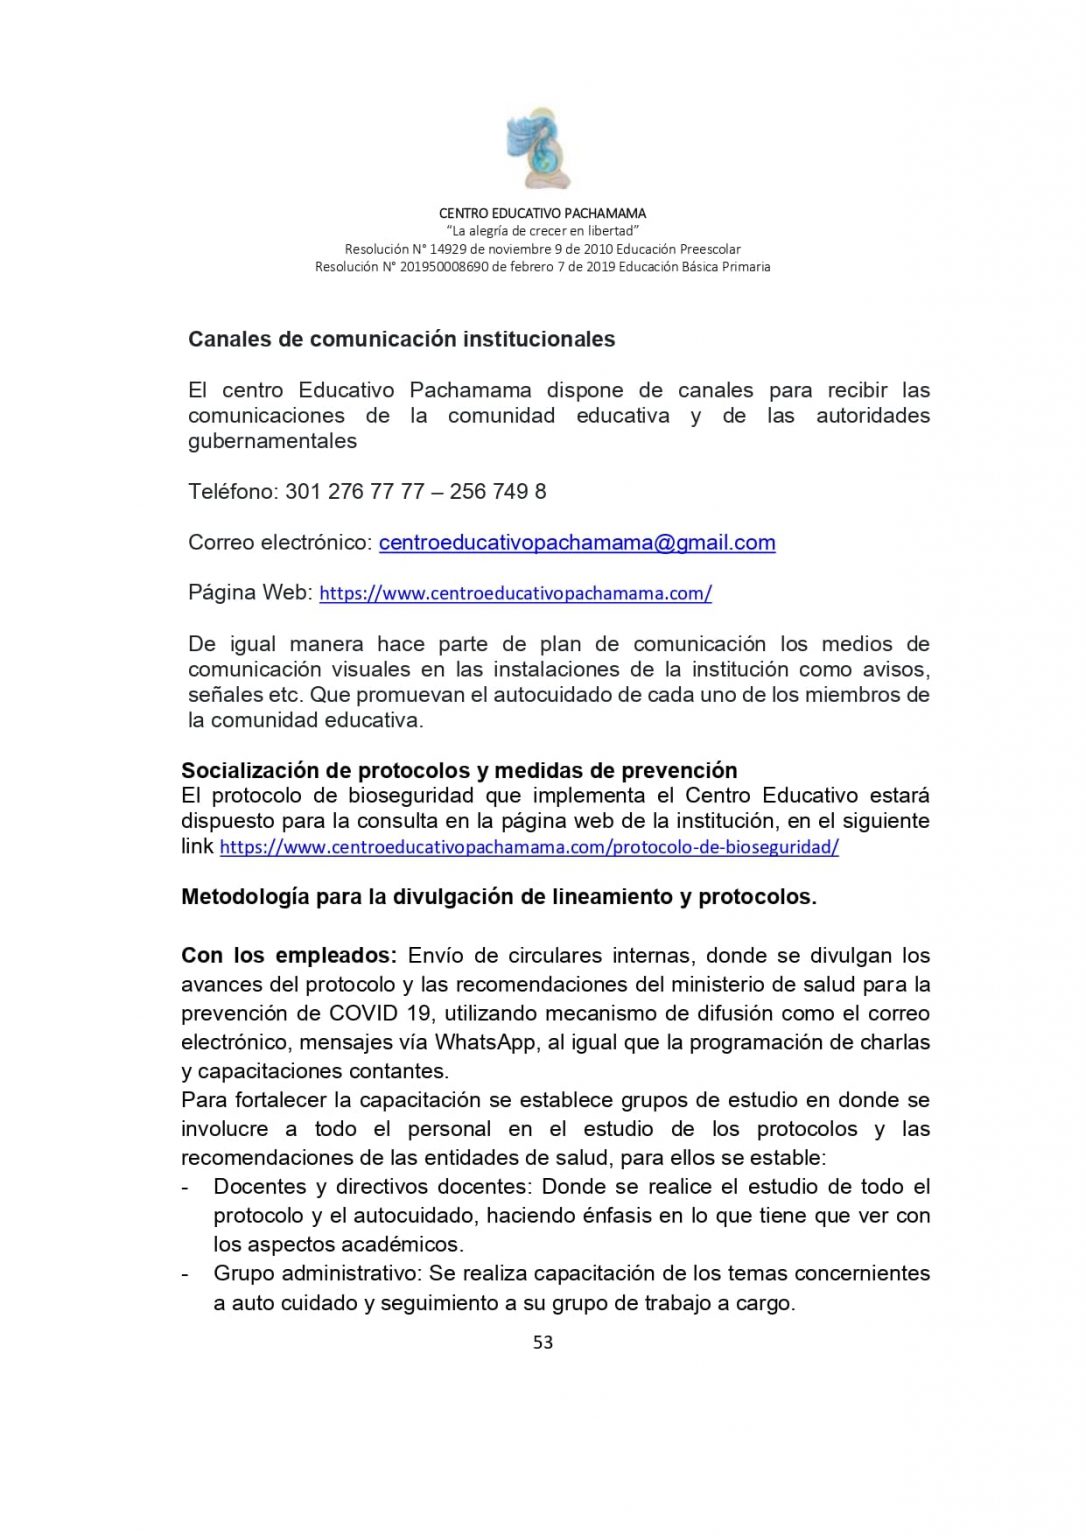 PROTOCOLO DE BIOSEGURIDAD PACHAMAMA Última Versión (3)-convertido_page-0053